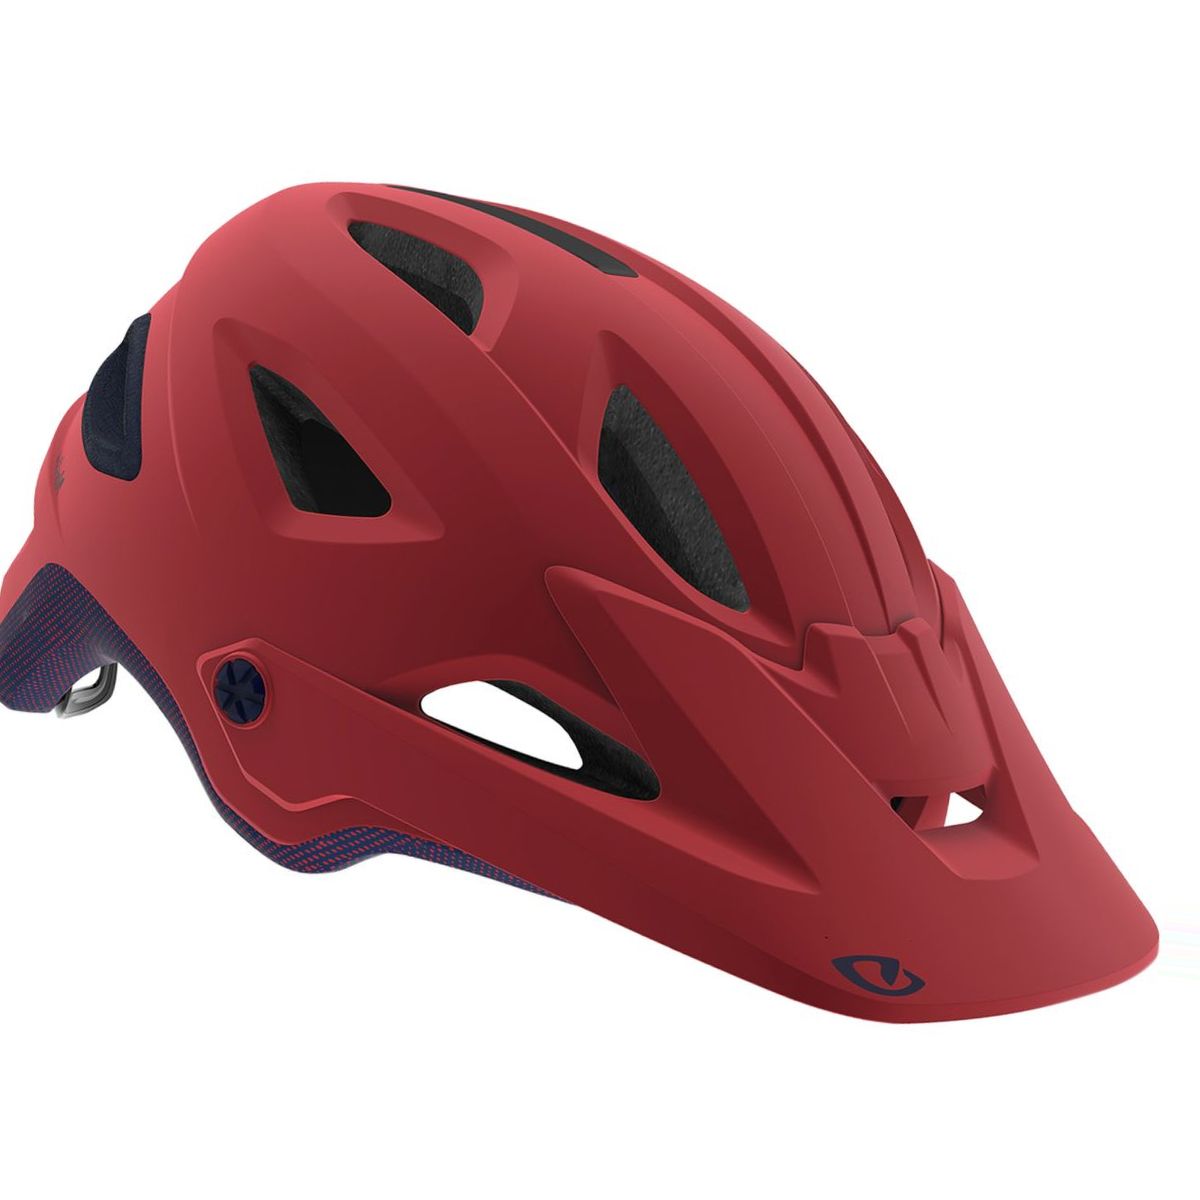 Giro Montara MIPS Helmet - Women's